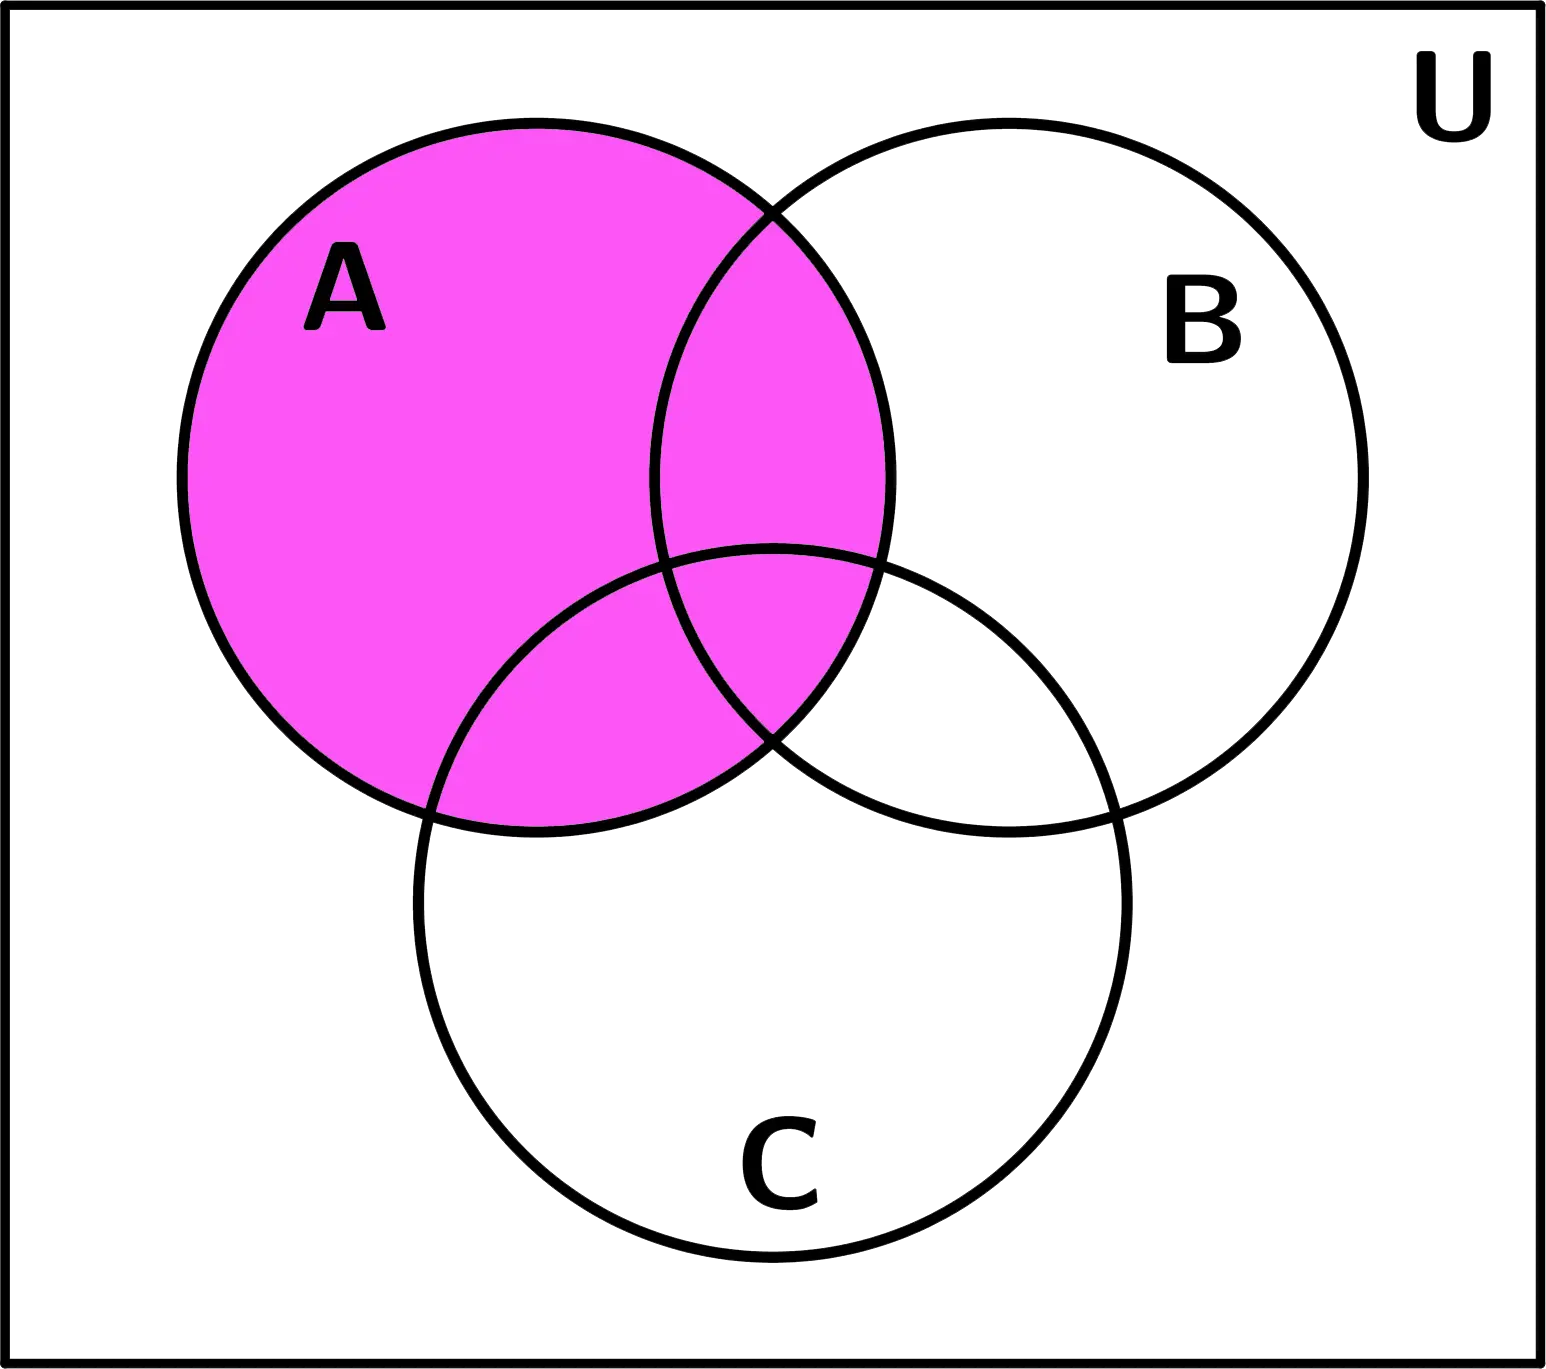 diagrama-de-venn-conjunto-A-ejemplo-3